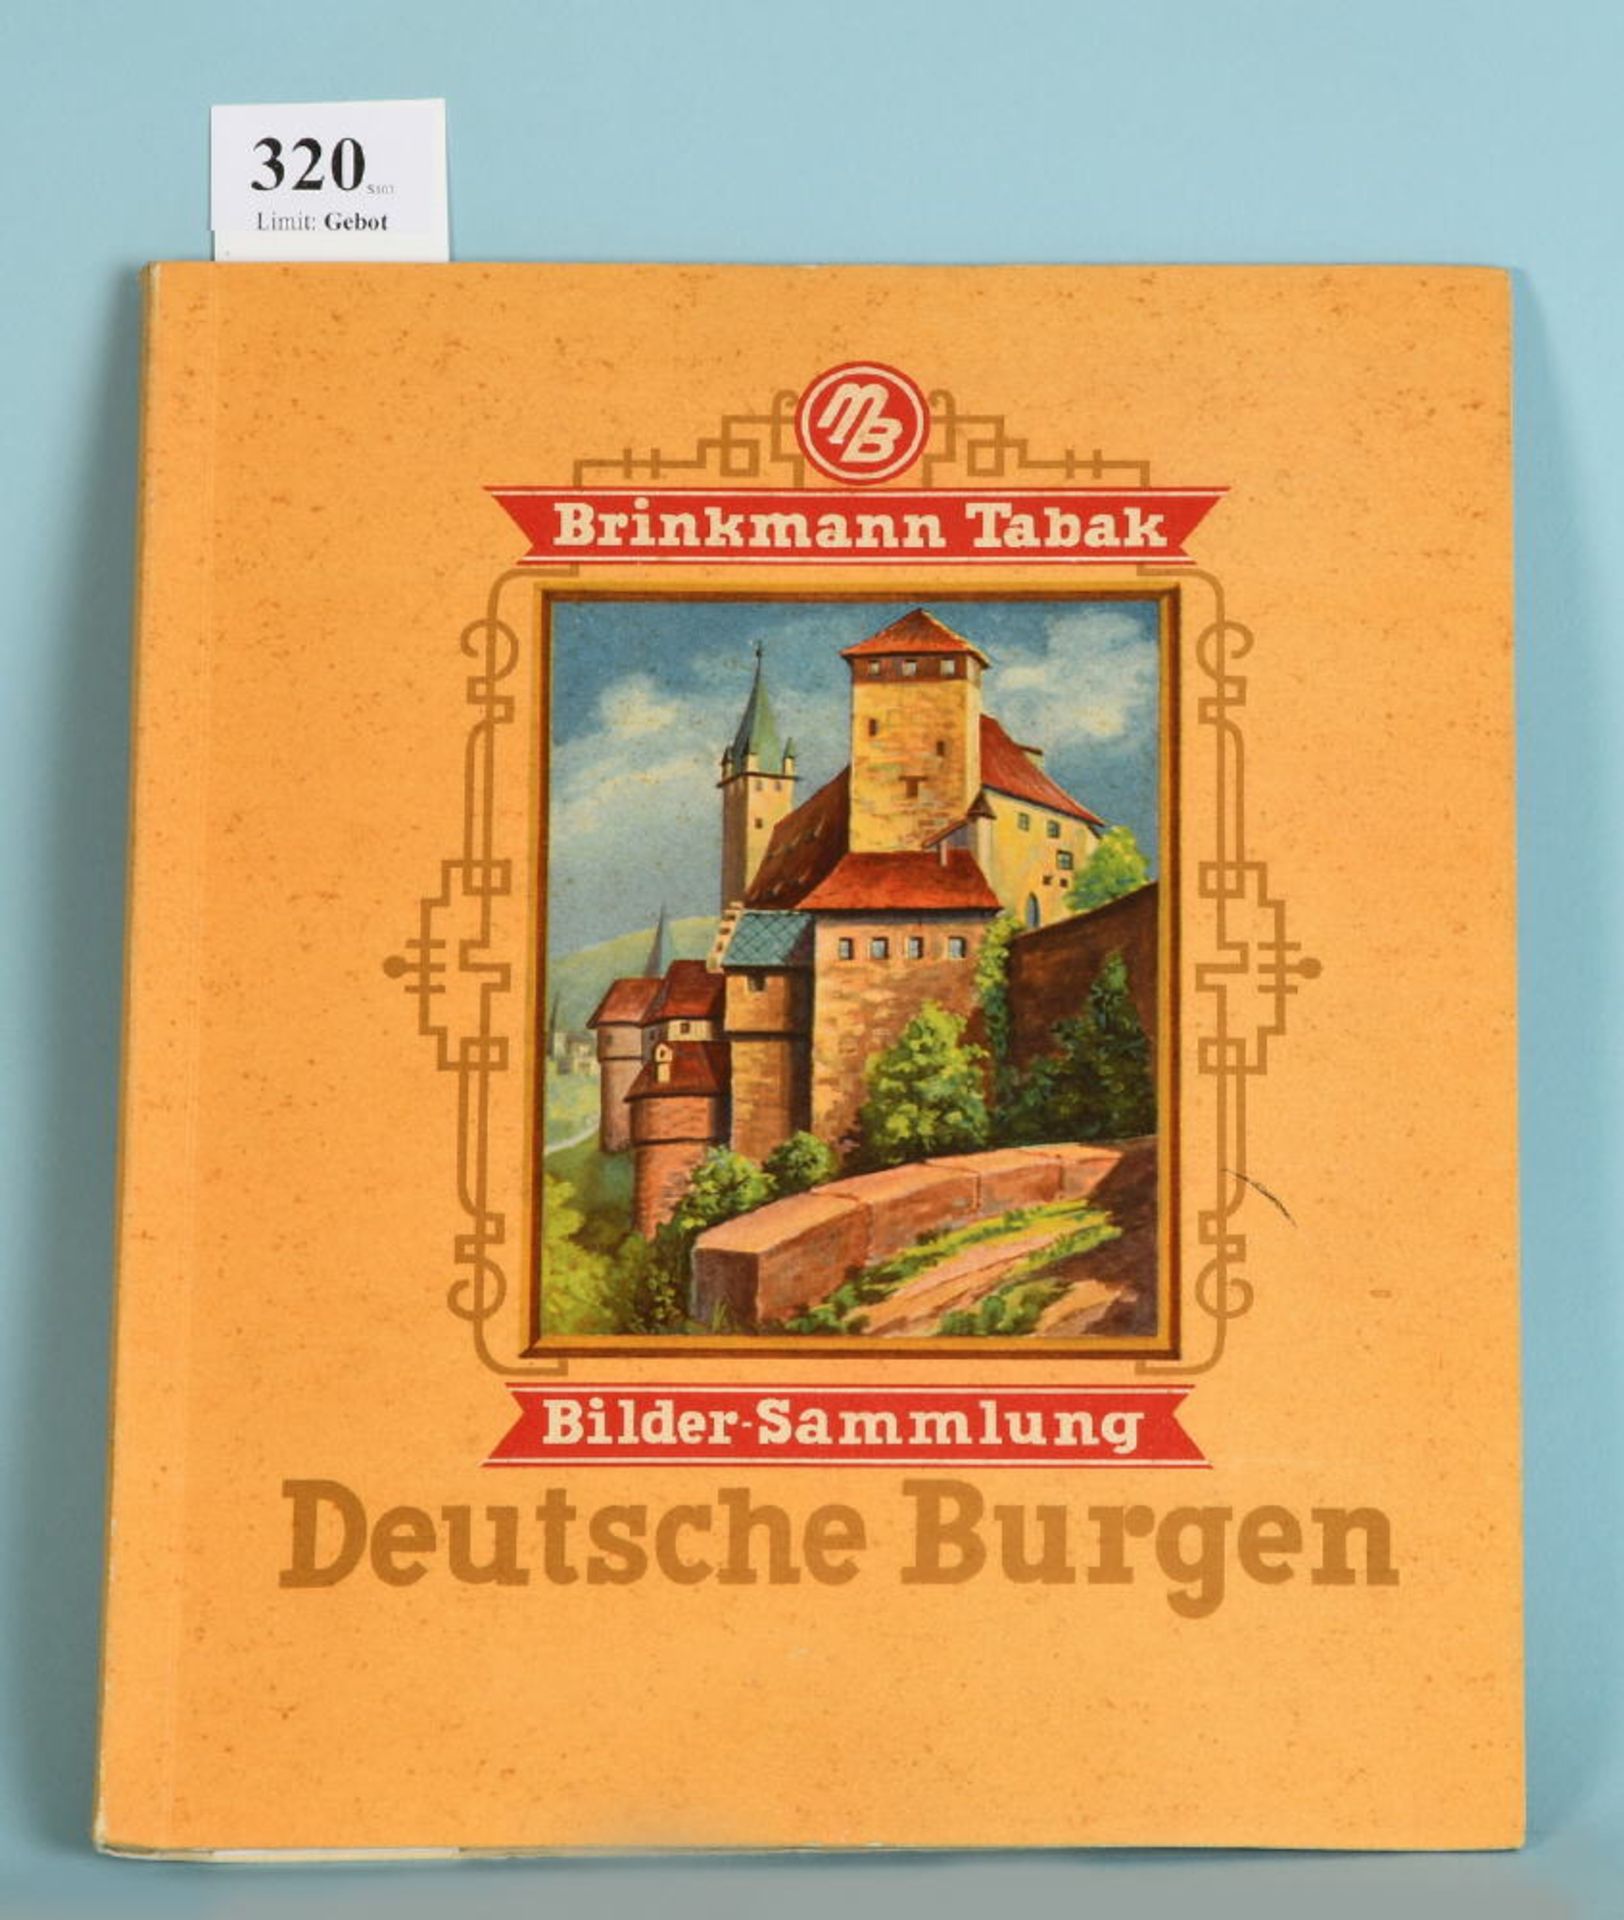 Sammelbilderalbum "Deutsche Burgen"zahlr. Bilder, 23 S., Martin Brinkamm AG, Bremen, o.J., KtE, g.